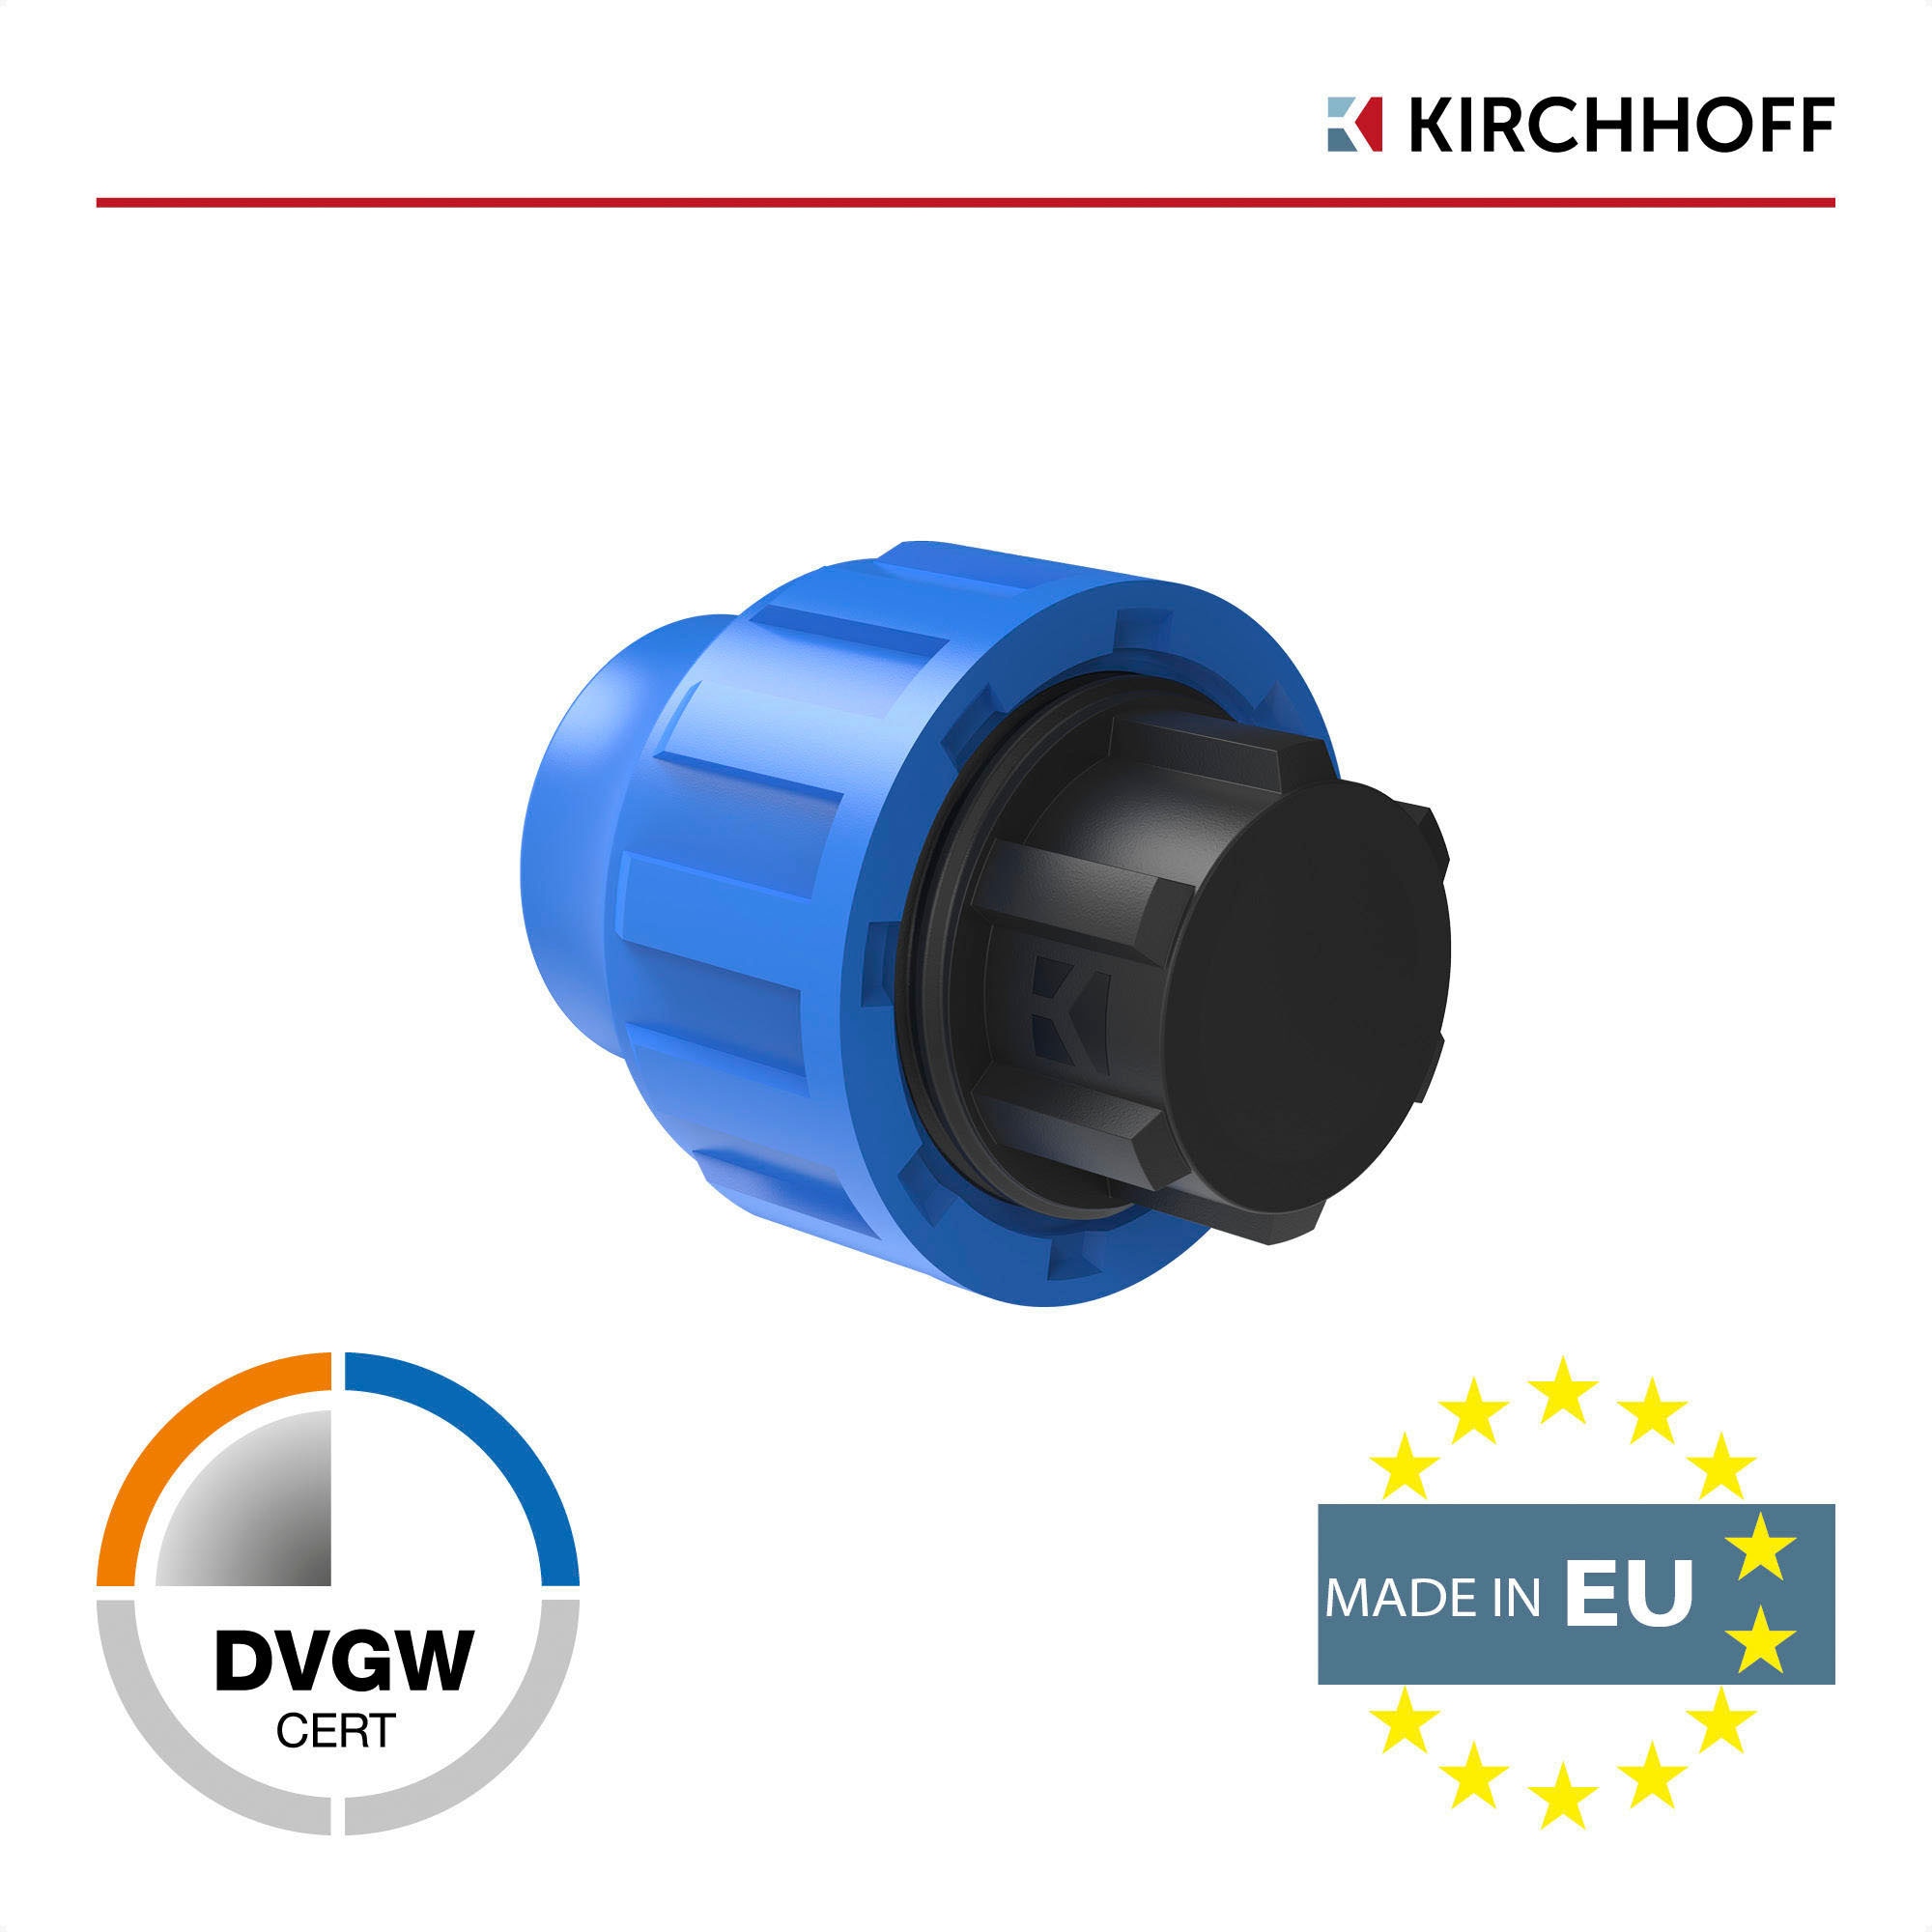 Kirchhoff Reduzierstück, PP Endstück für HDPE Rohr, 25 mm